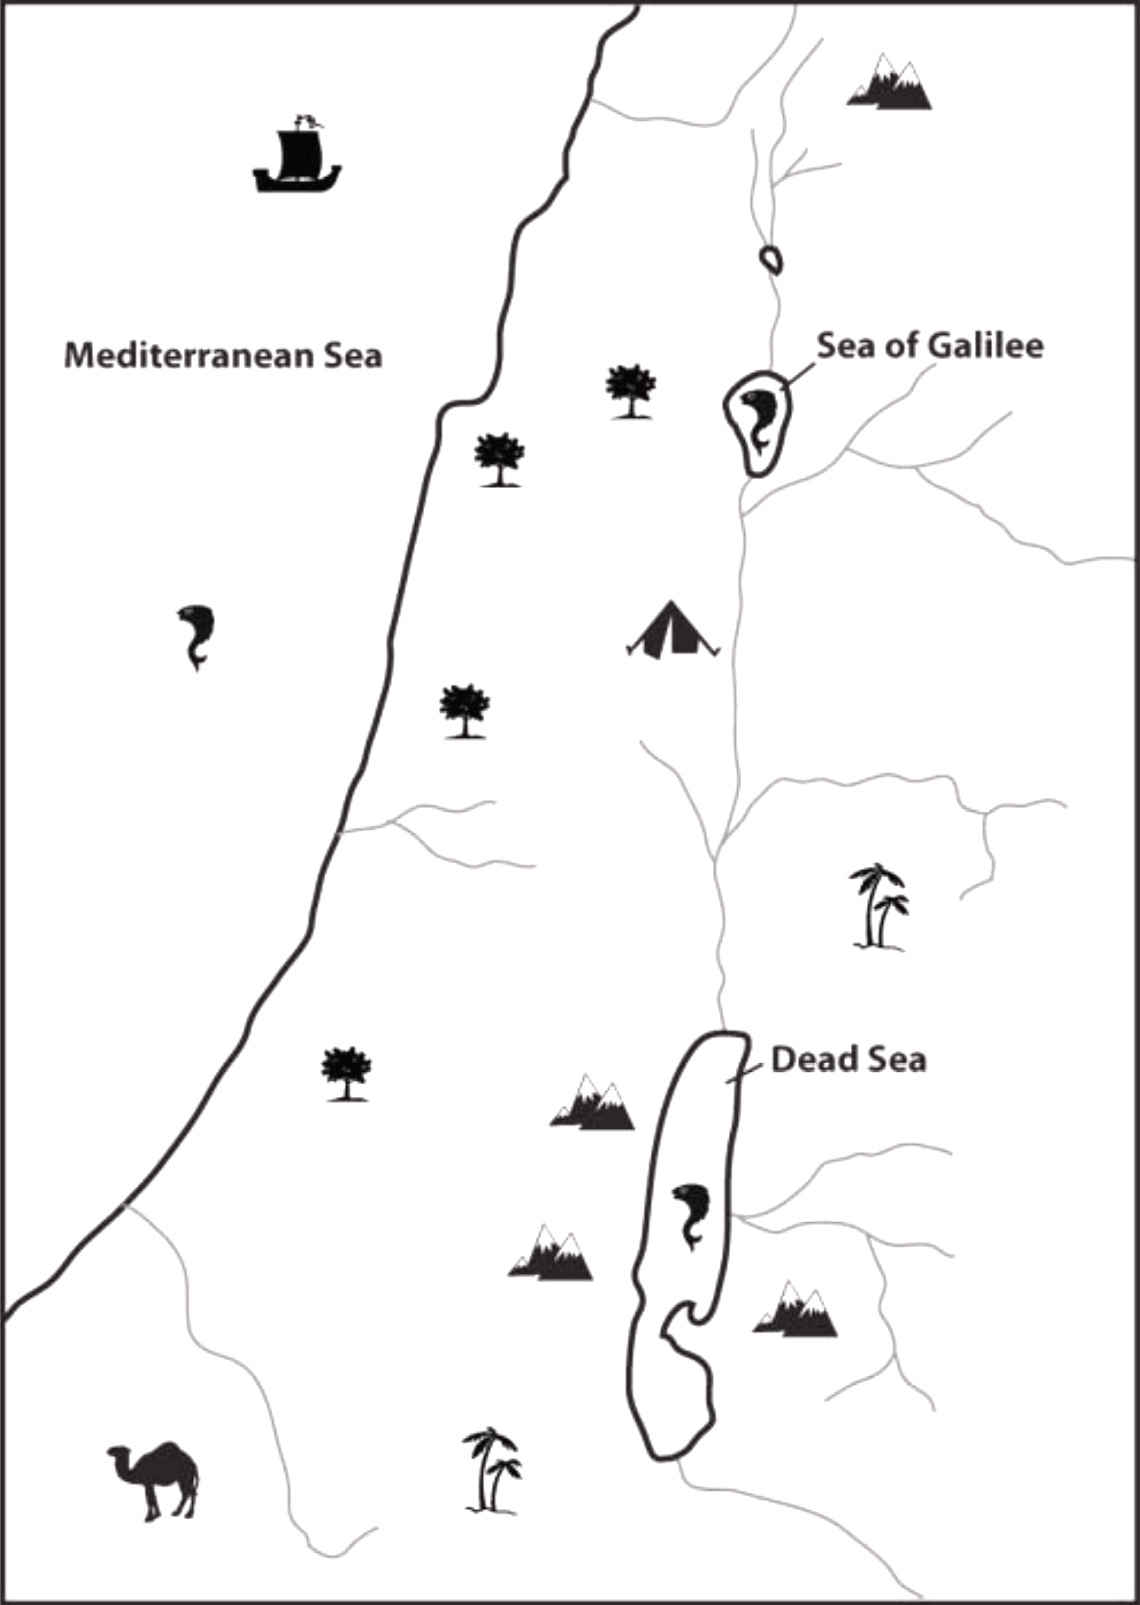 Jordan River map